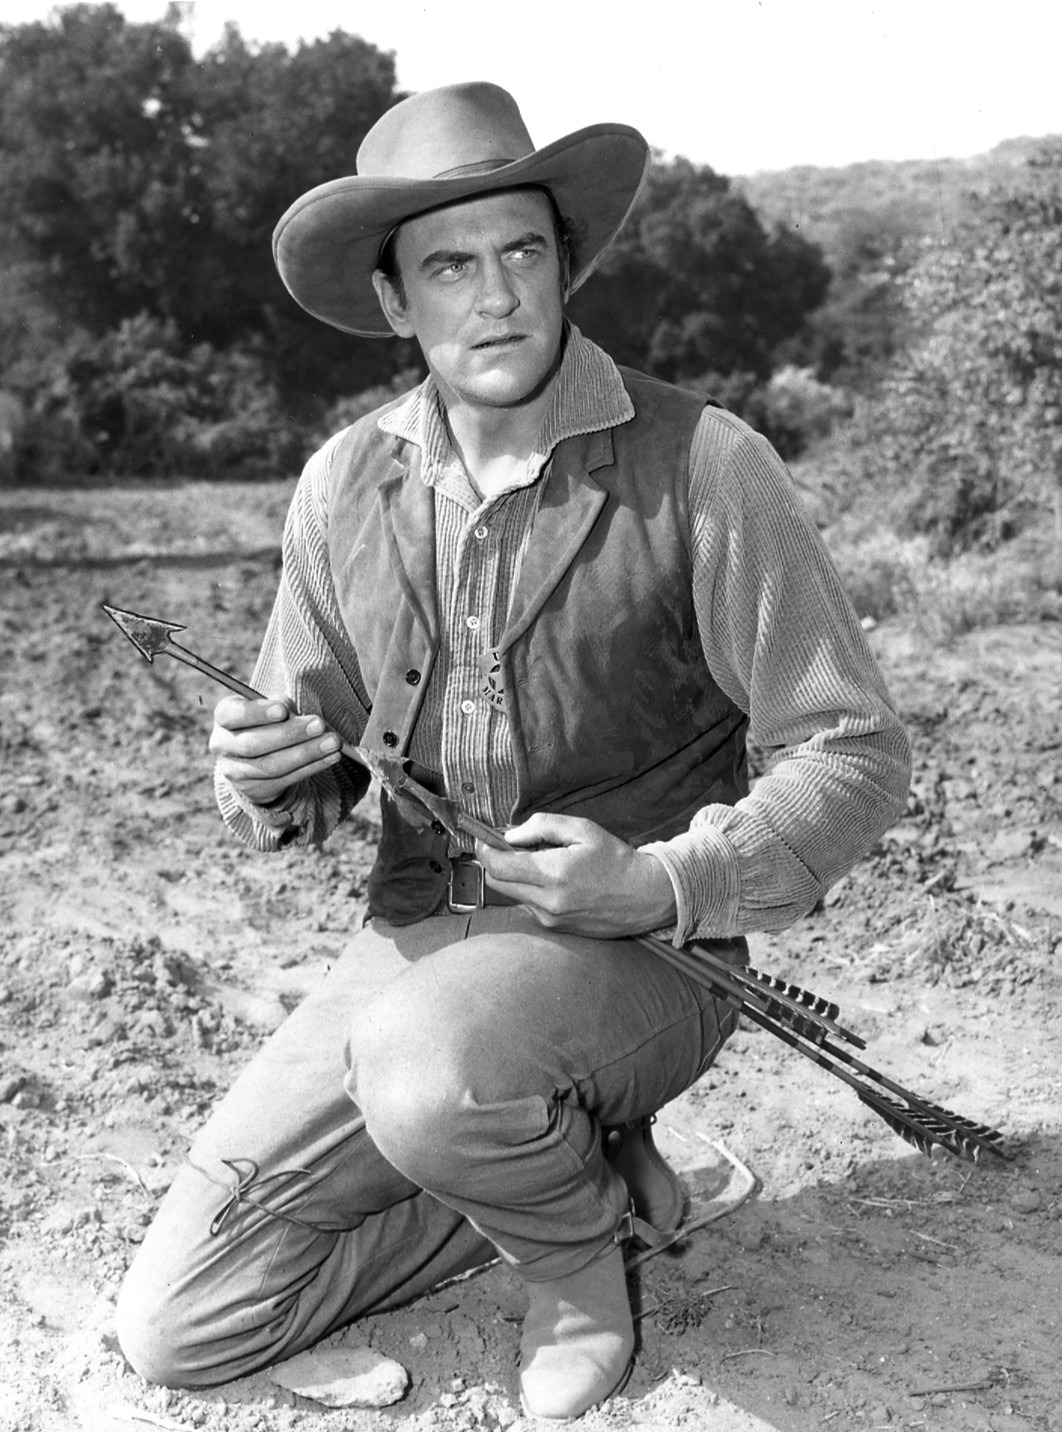 James Arness as Gunsmoke's Matt Dillon in 1956
